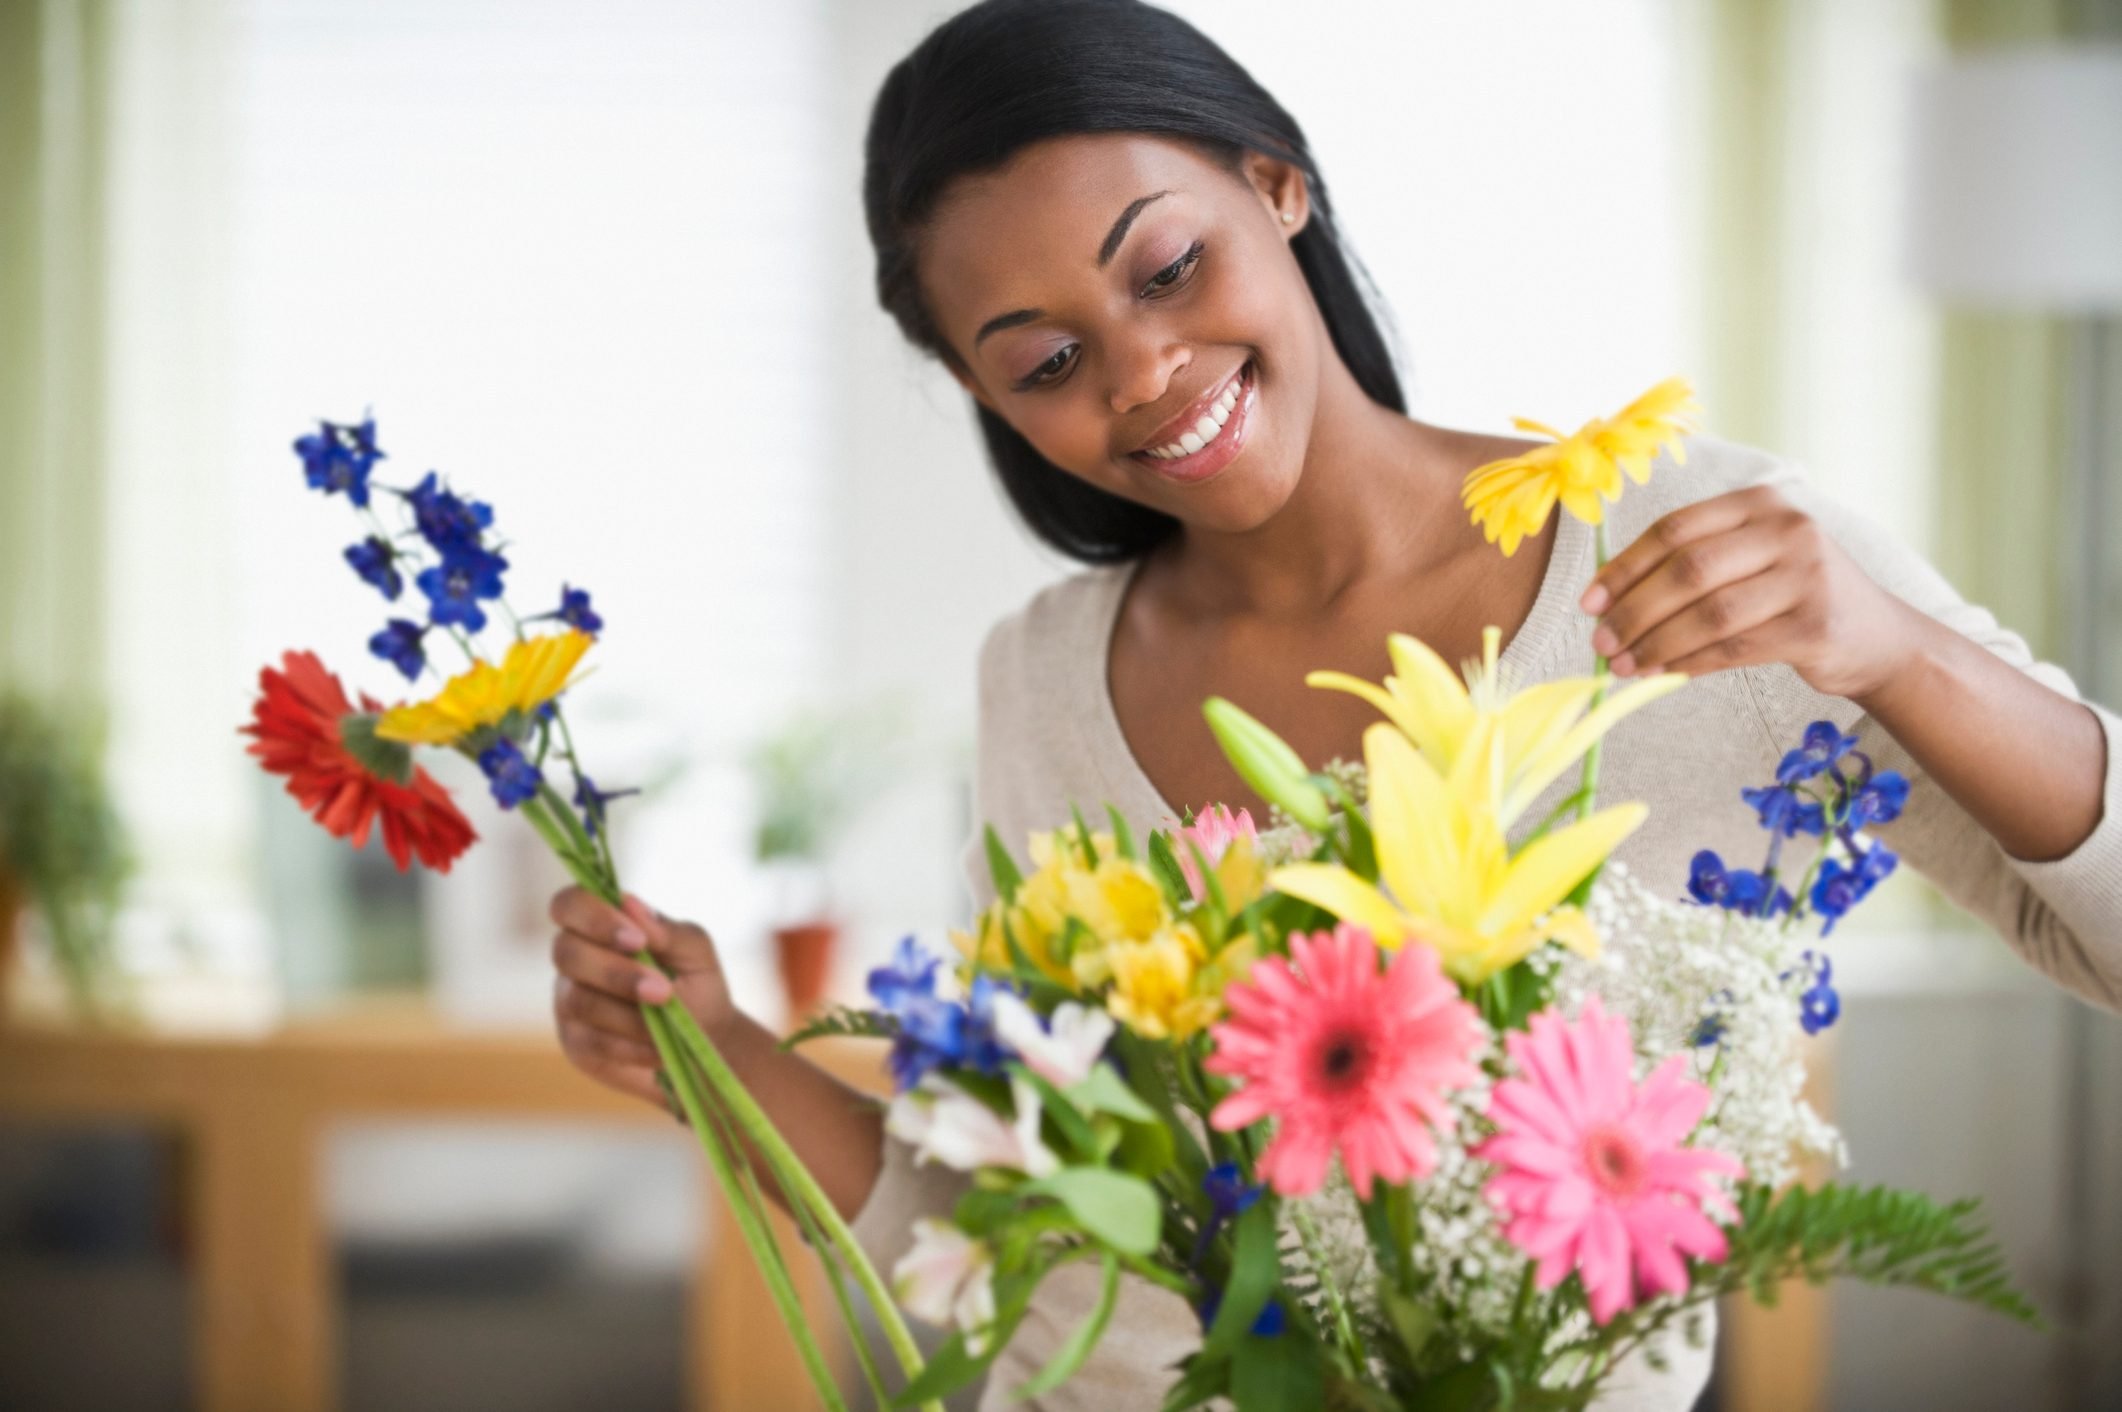 How to Arrange Fresh Cut Flowers Like a Pro